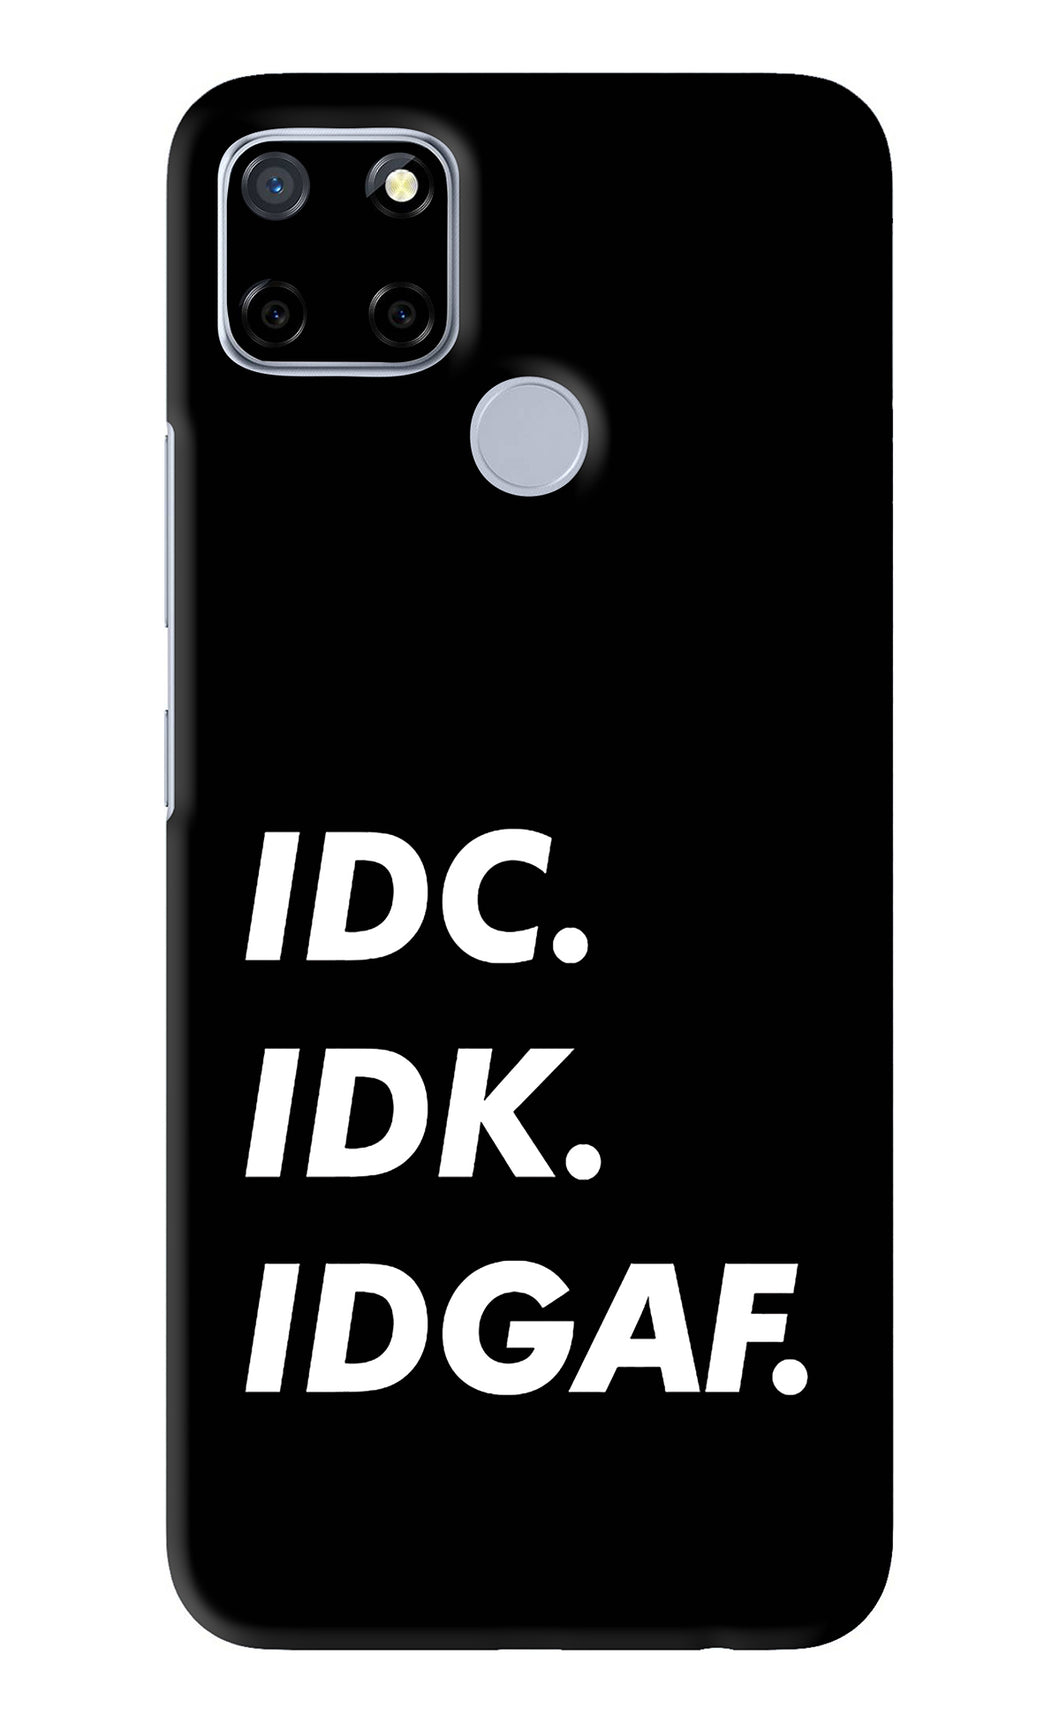 Idc Idk Idgaf Realme C12 Back Skin Wrap